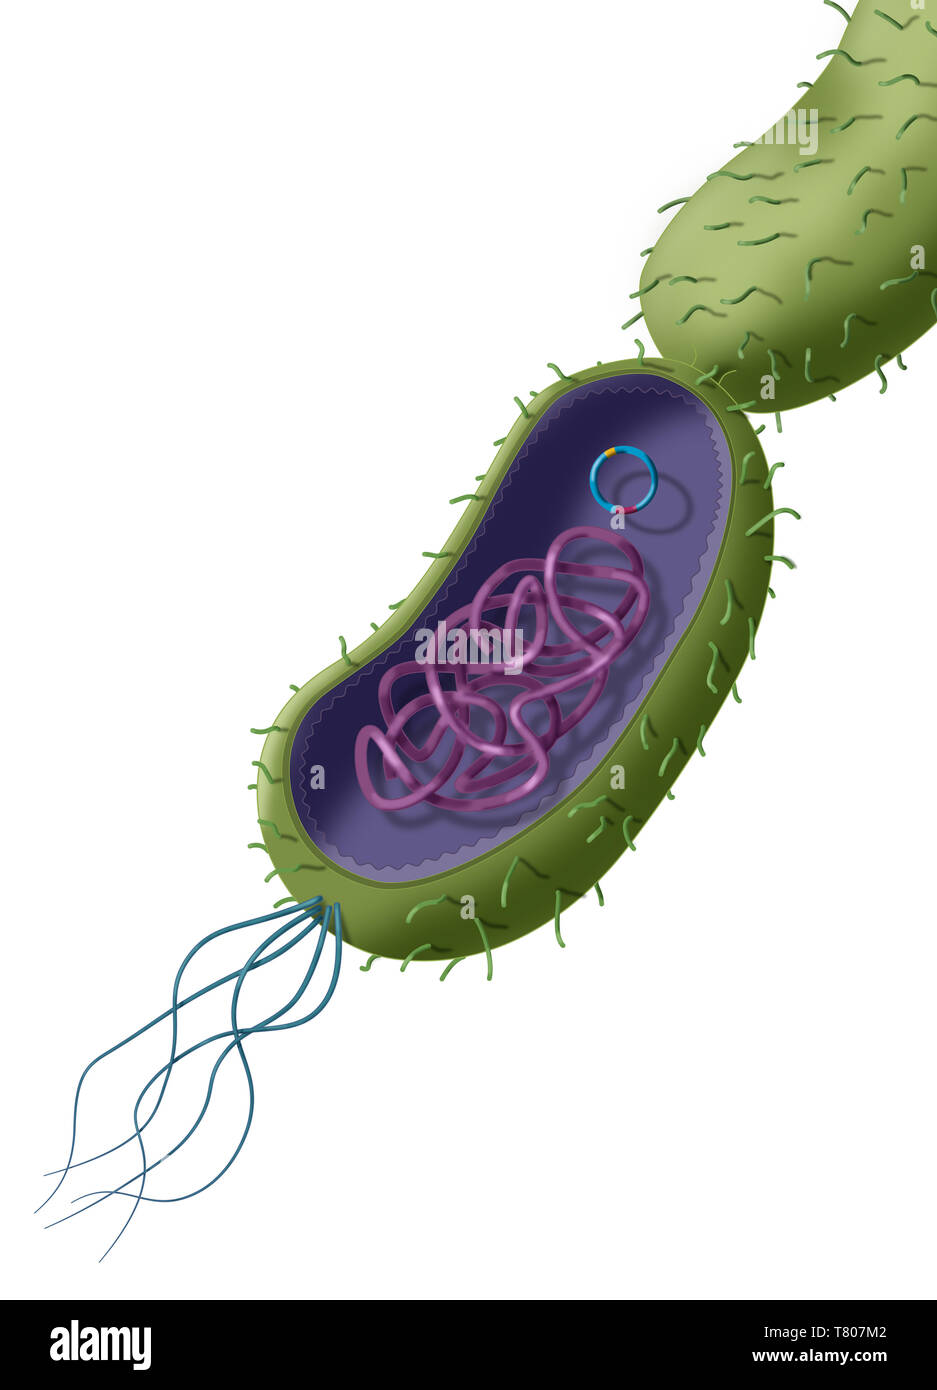 La résistance aux antibiotiques par transfert plasmidique Horizontal, illustration Banque D'Images